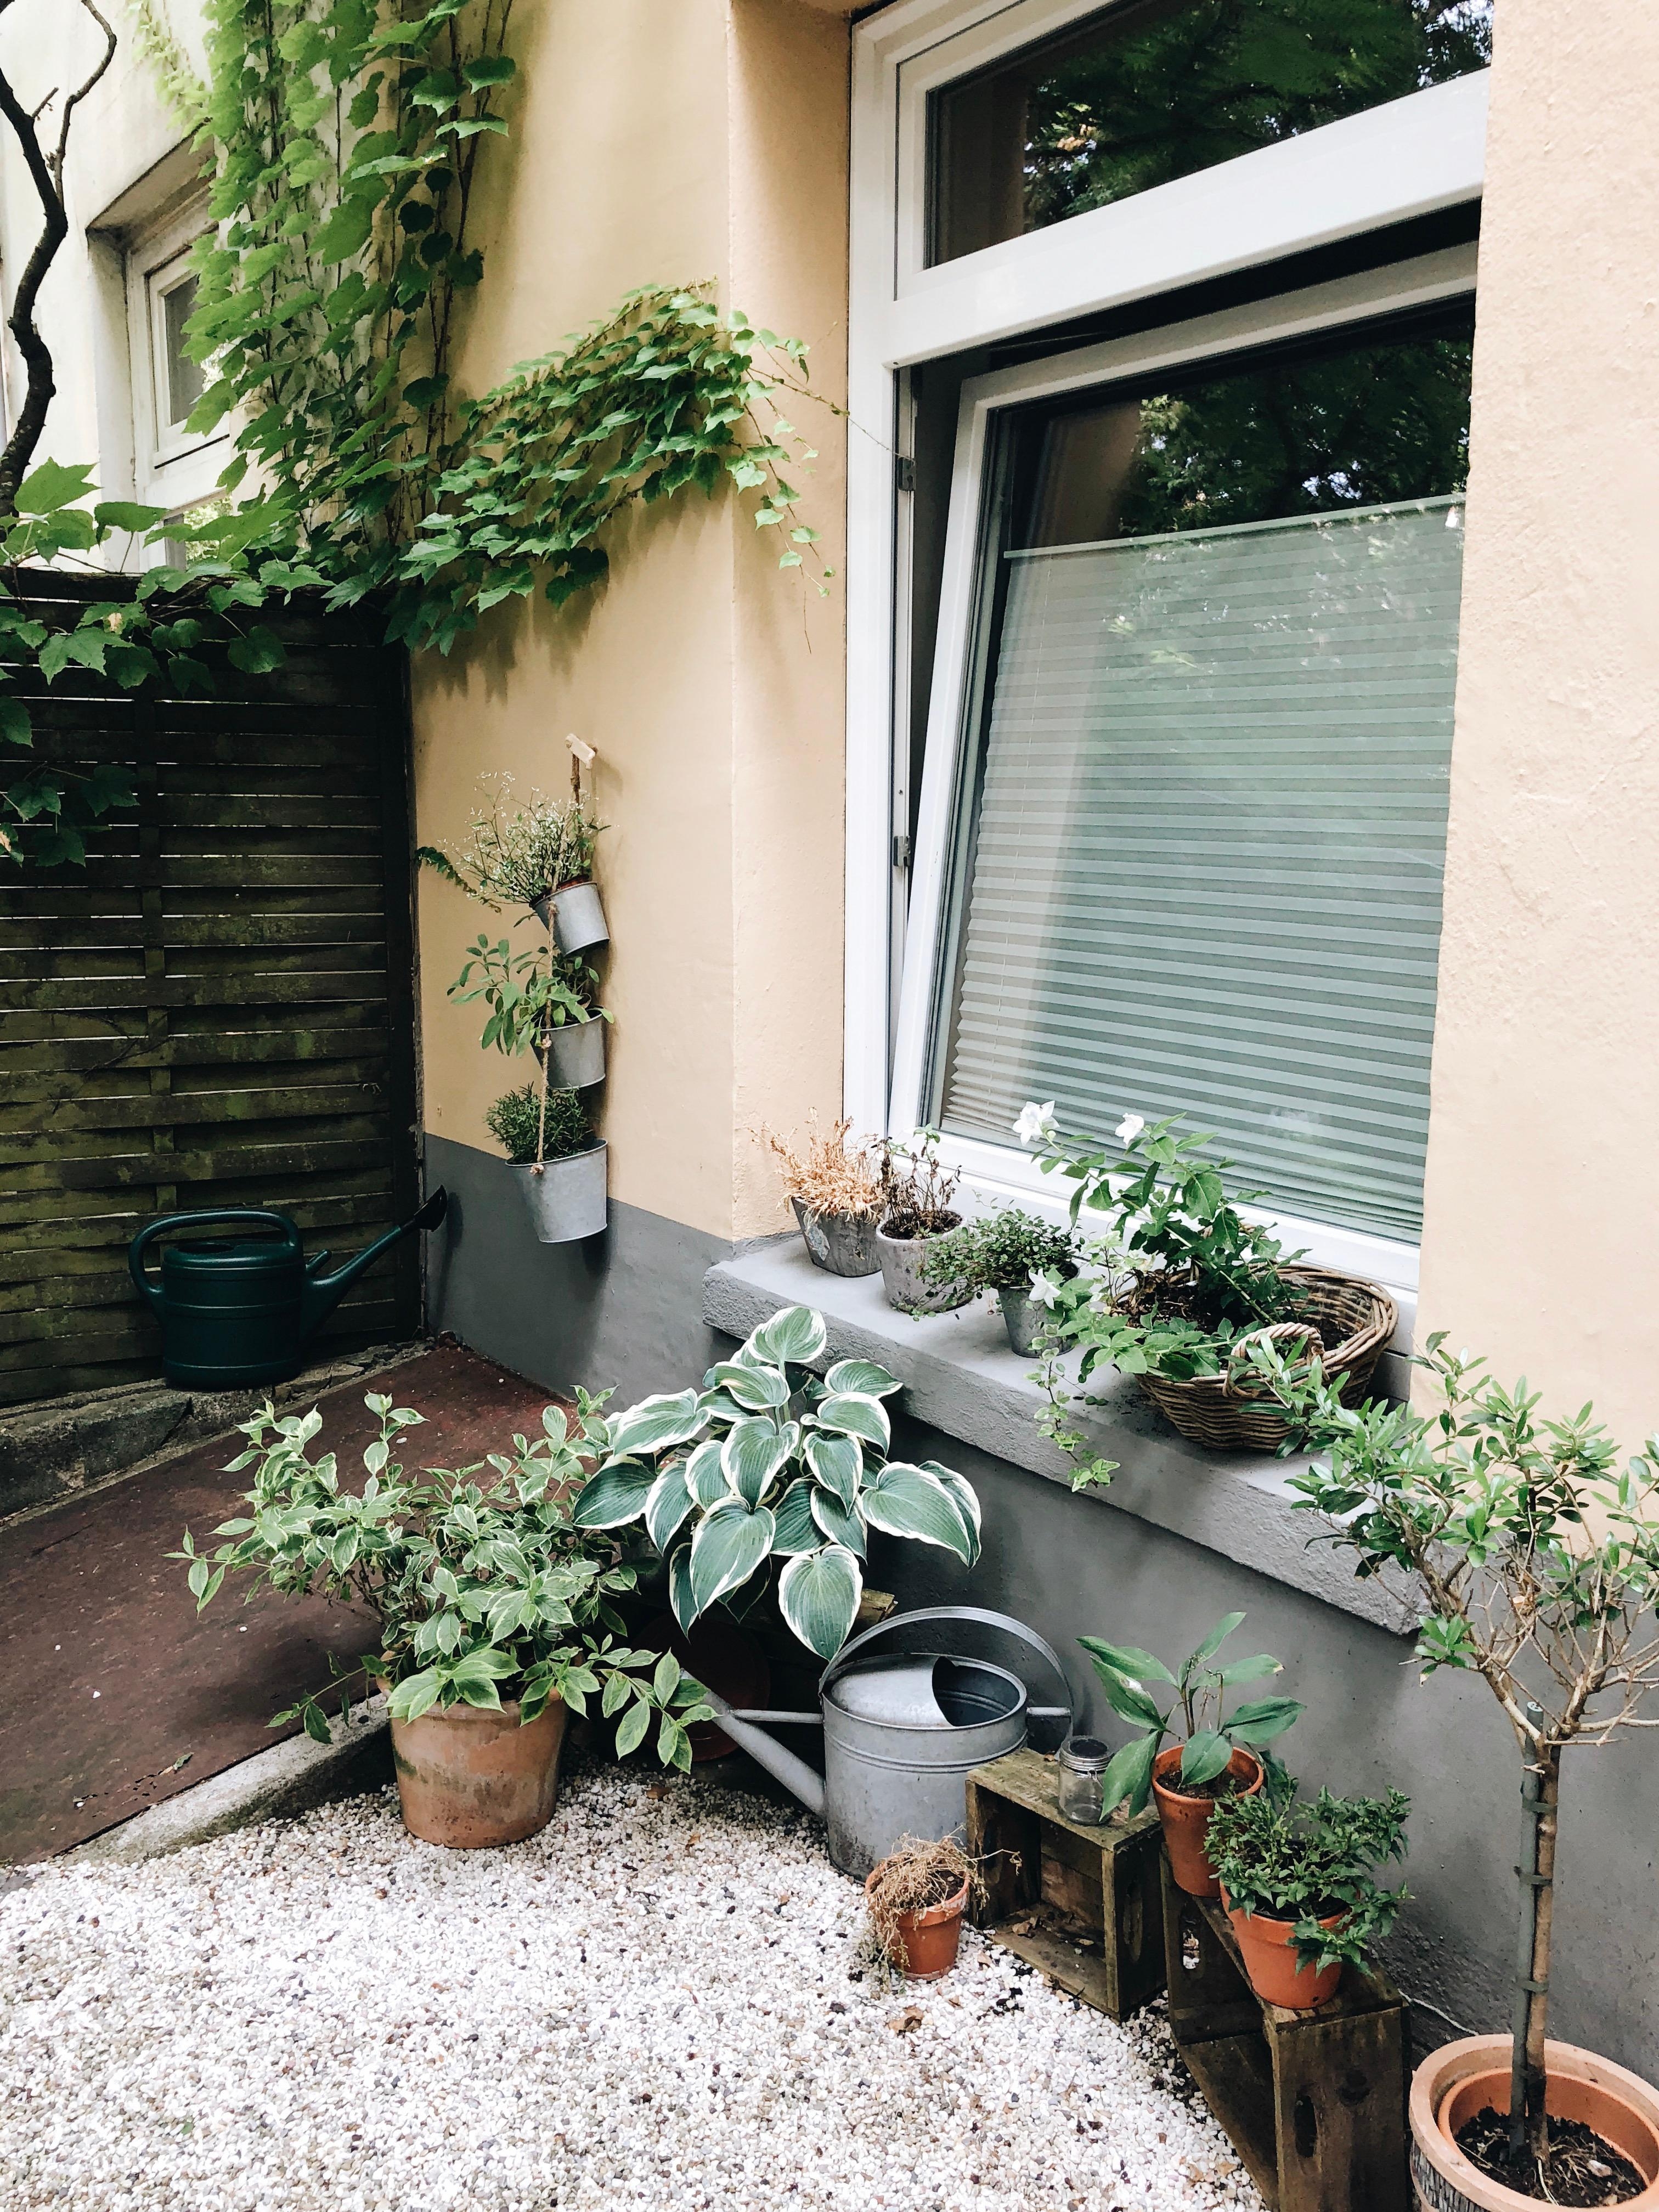 Noch nie gezeigt, dabei ist es doch jetzt im Sommer mein zweites Wohnzimmer: unser Garten mit Terrasse.
#garten #outdoor